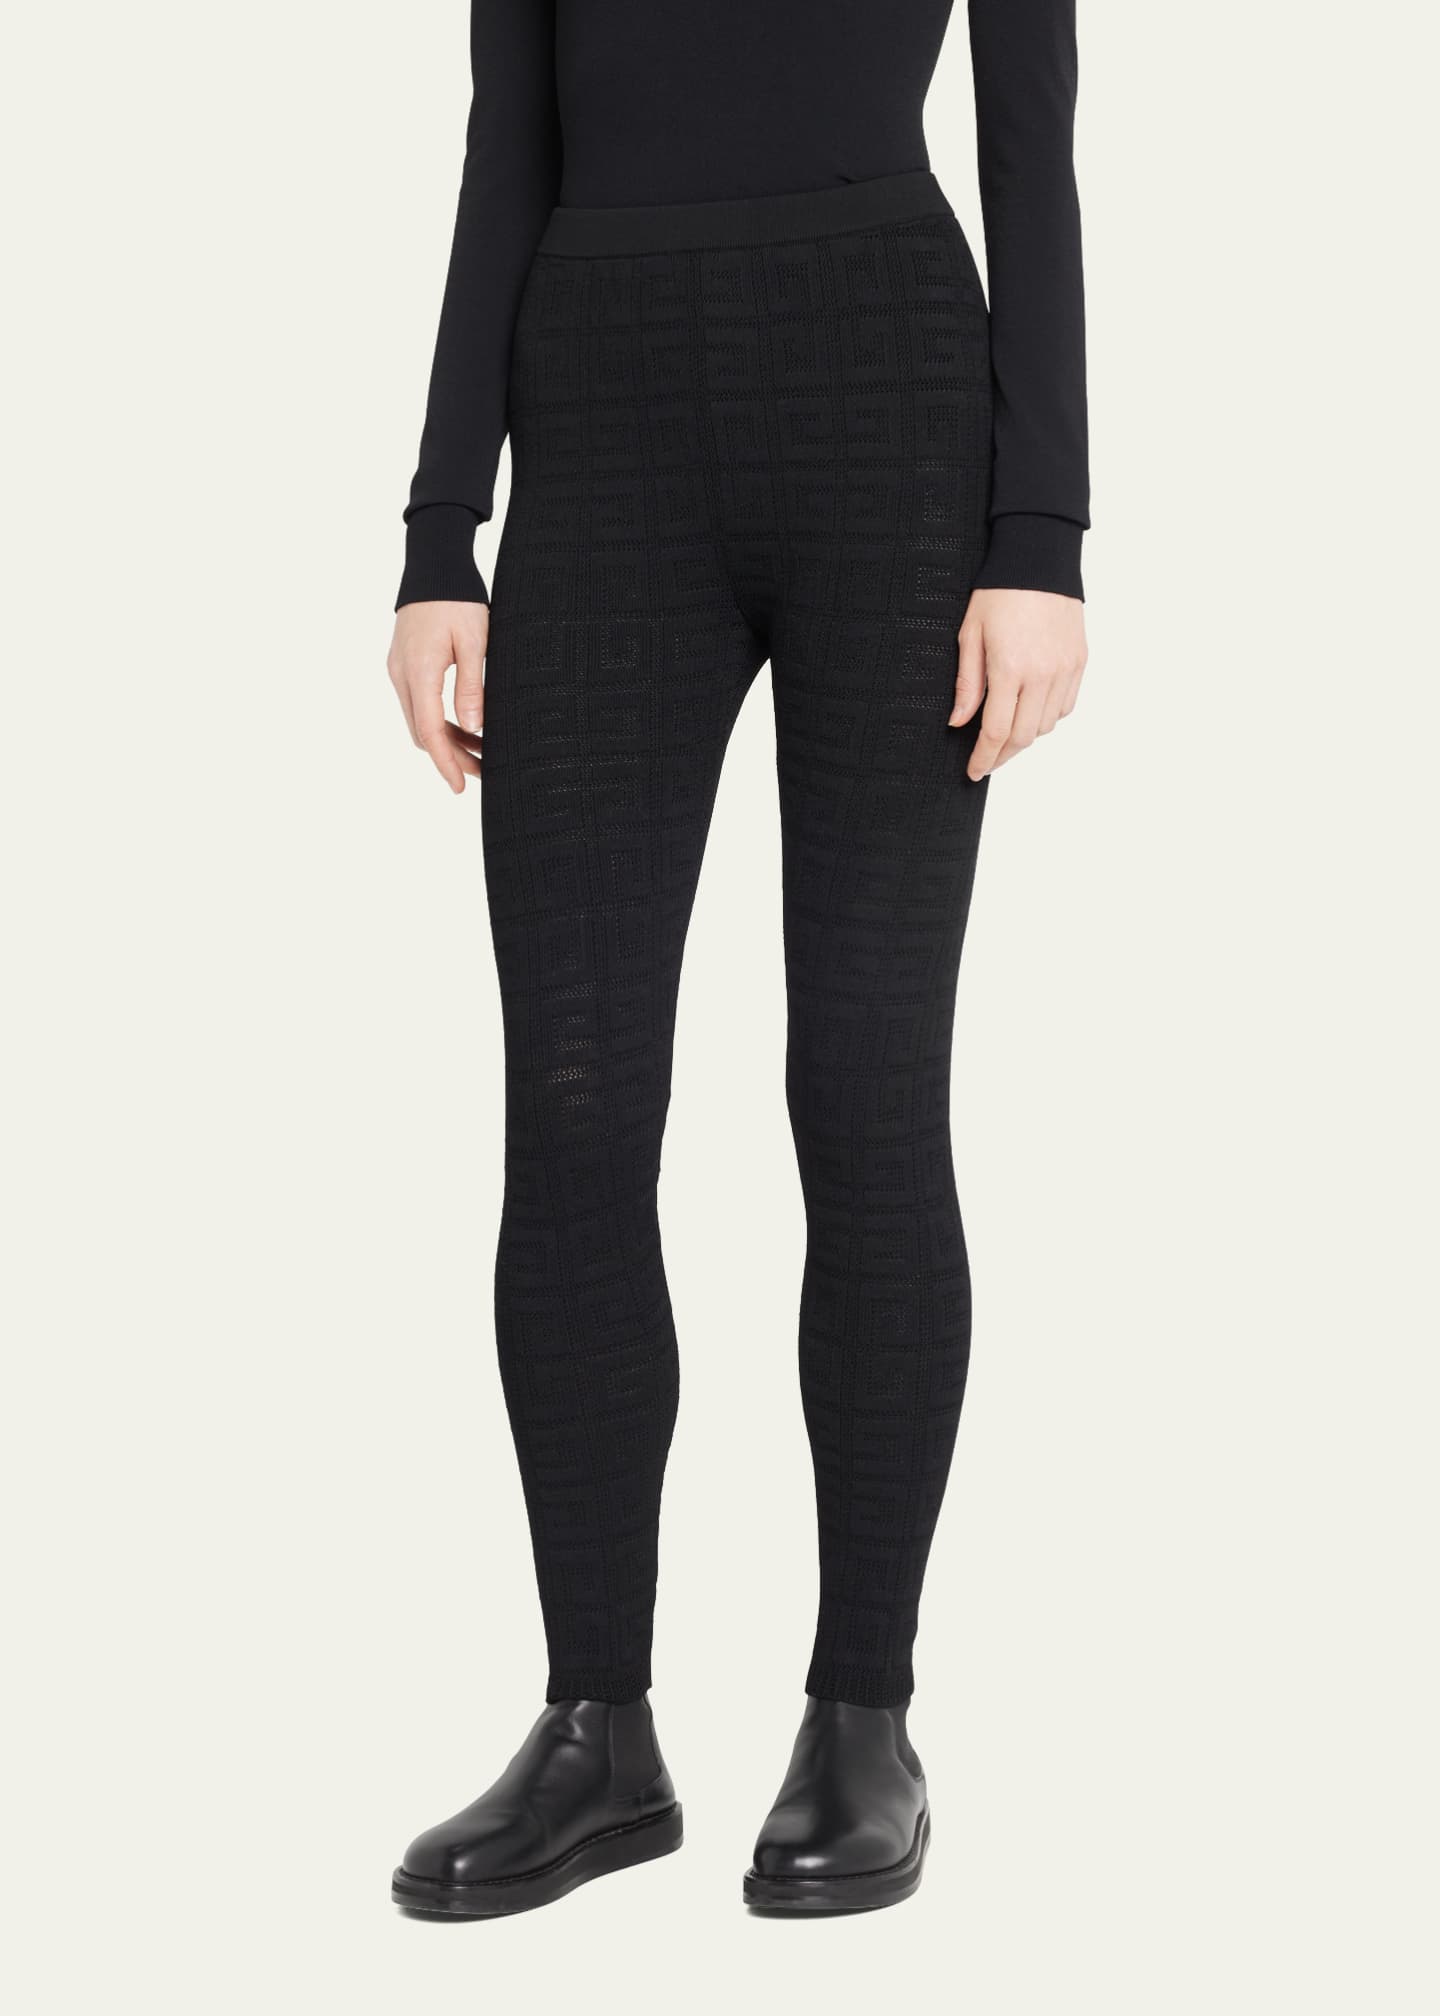 Buy Givenchy Jacquard-knit Leggings - Black At 40% Off